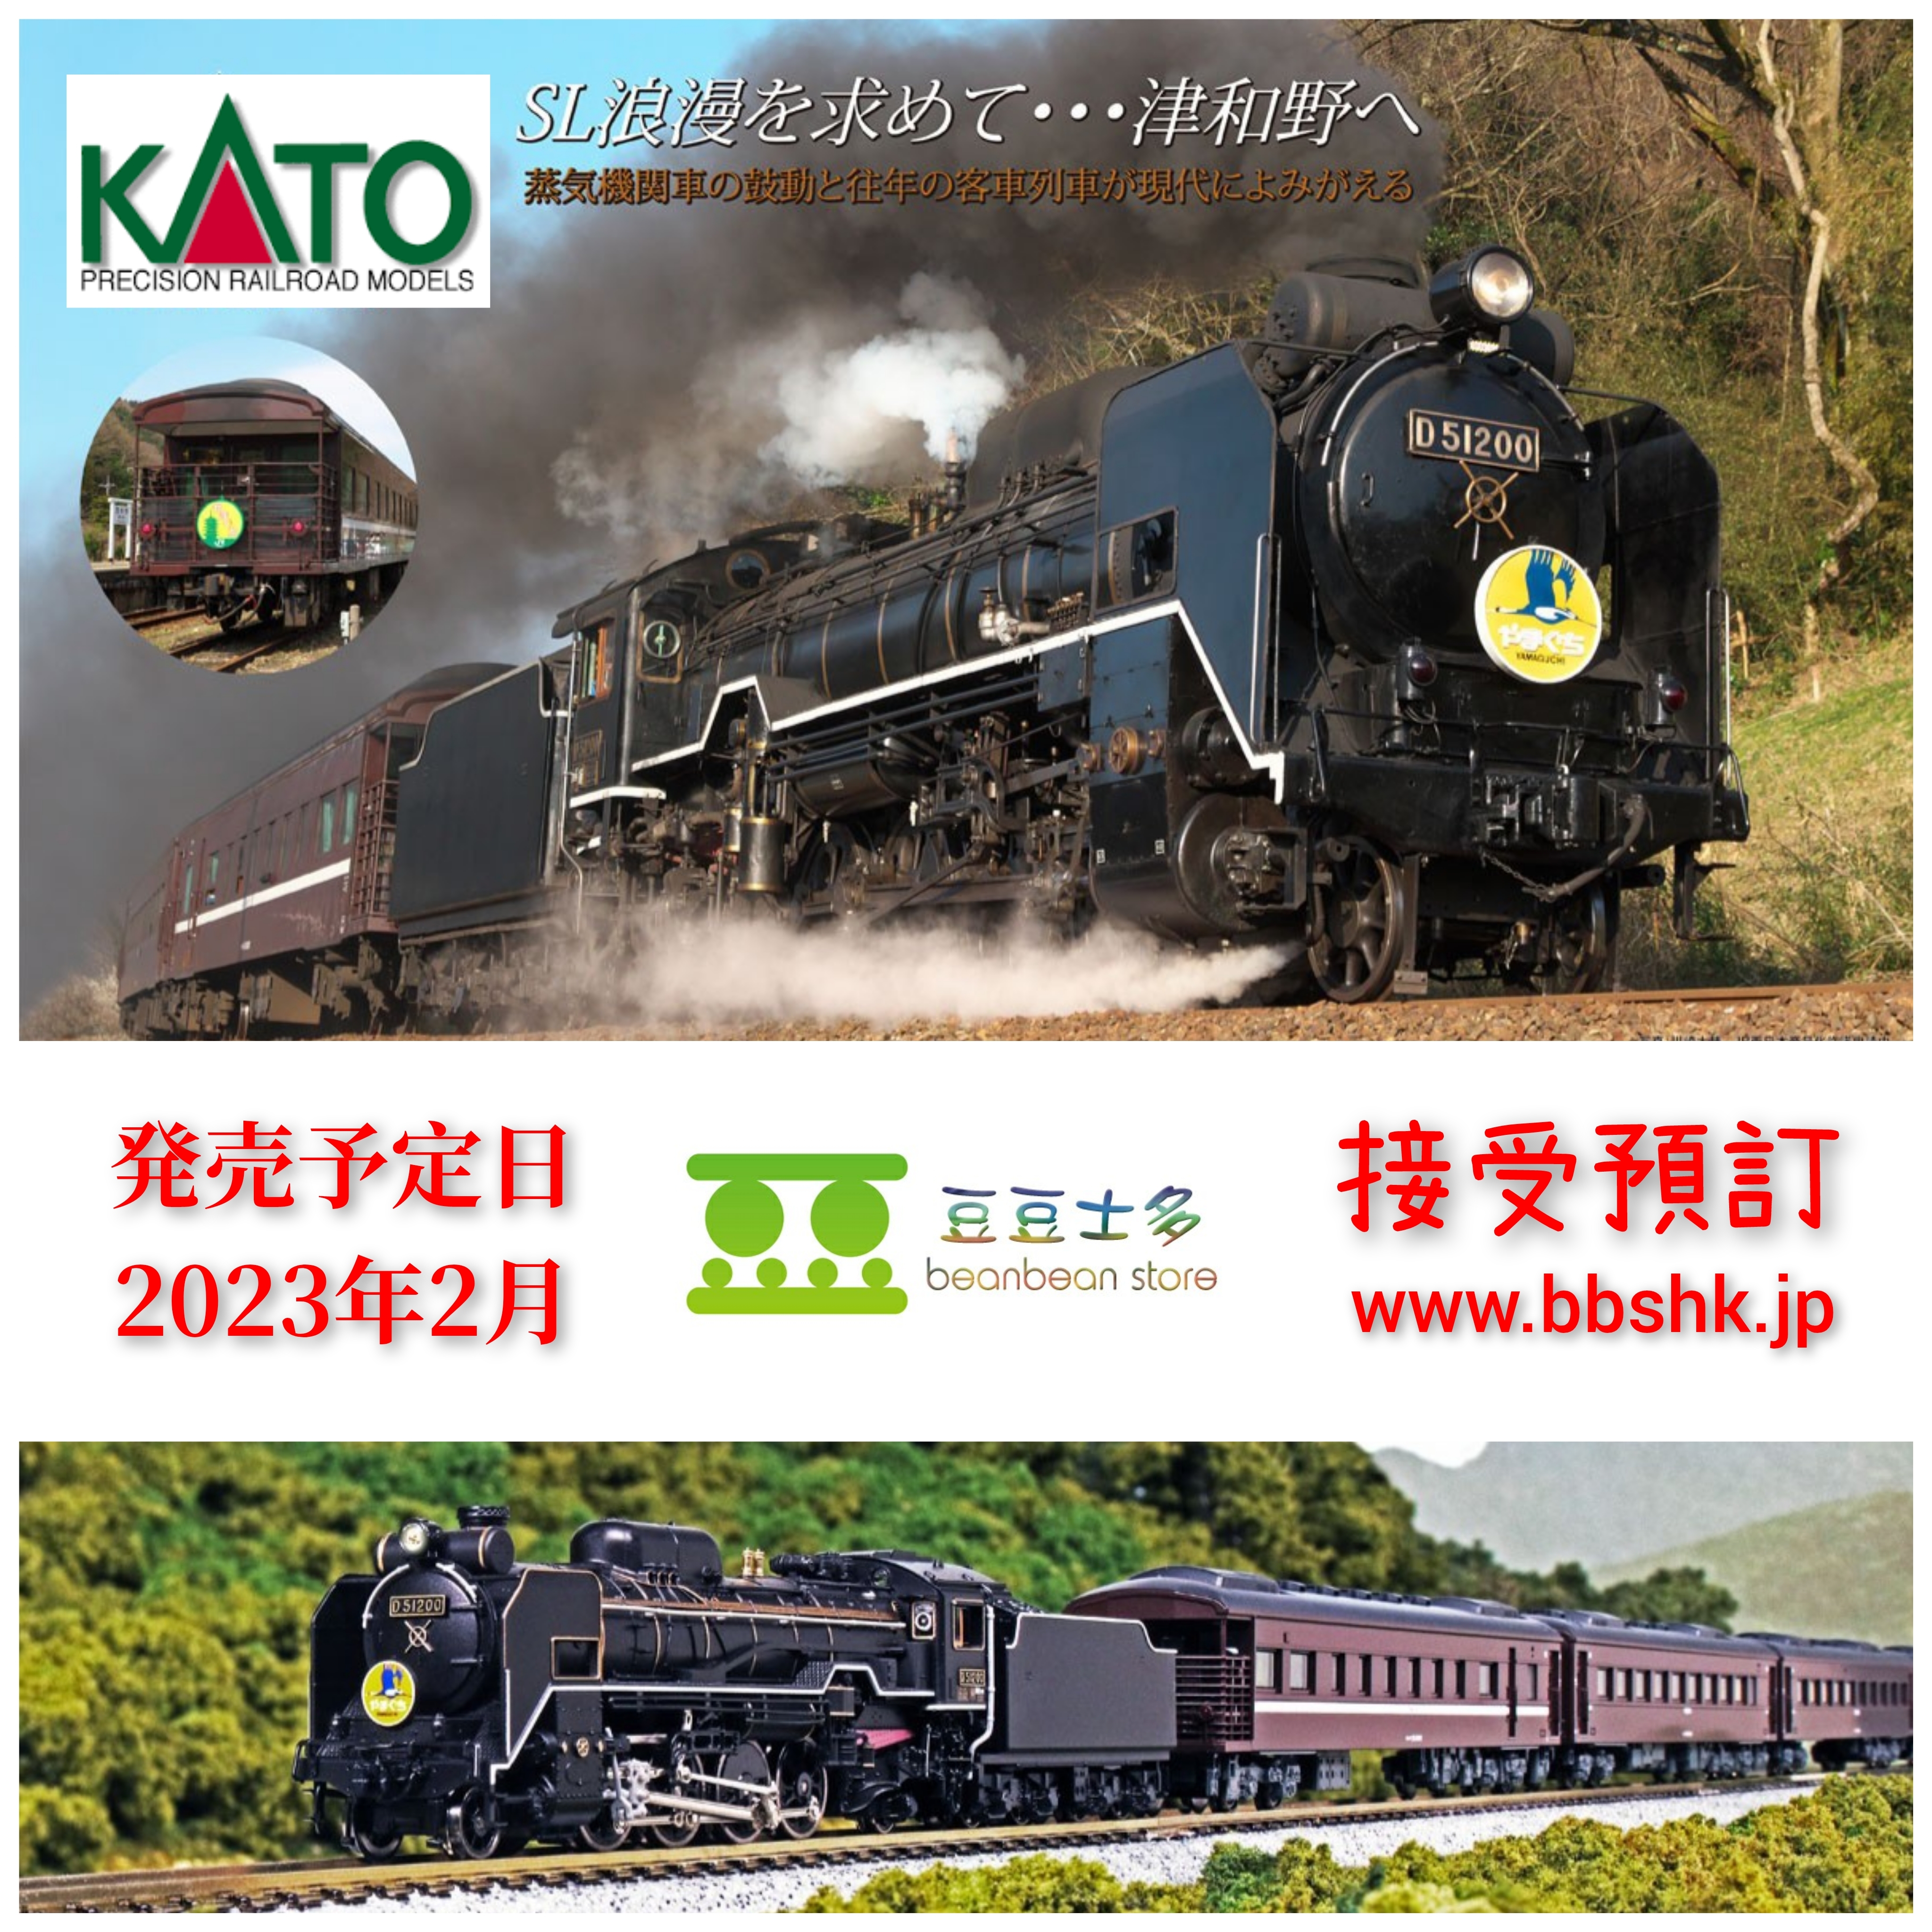 新商品!新型 No:2016-8 KATO D51 200 SL やまぐち 号 鉄道模型 Nゲージ カトー